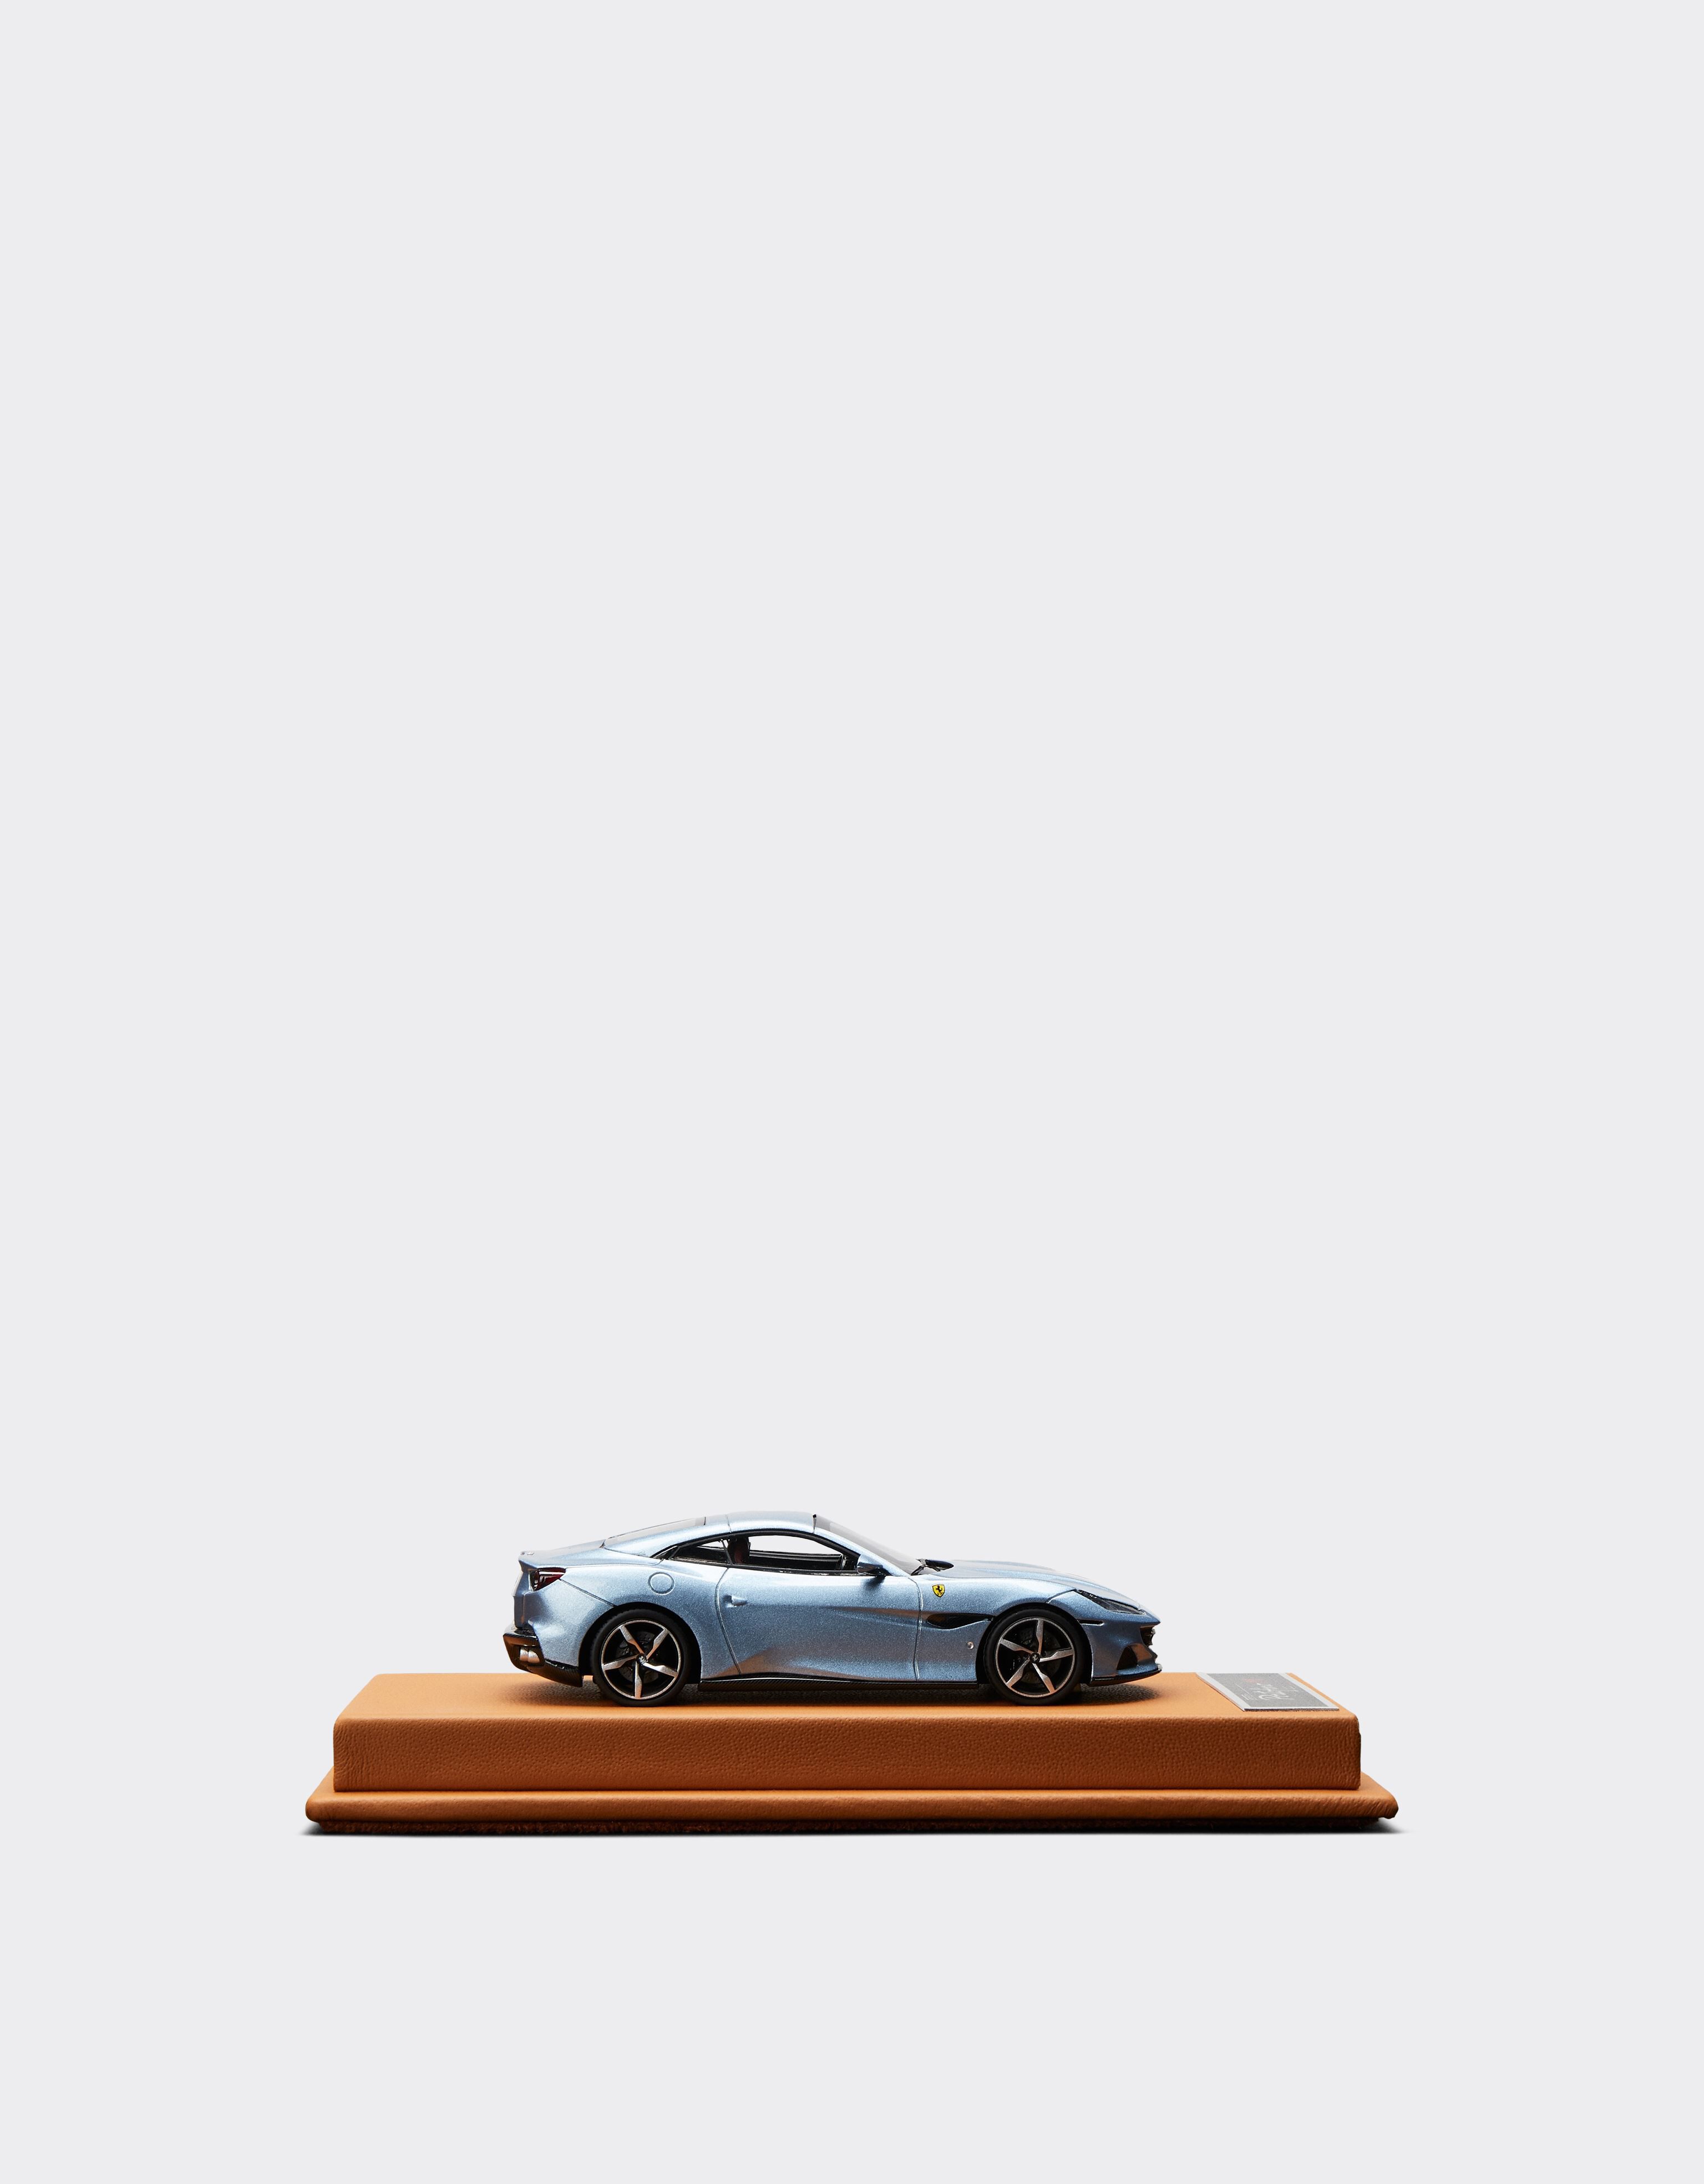 ${brand} Modellino Ferrari Portofino M in scala 1:43 ${colorDescription} ${masterID}